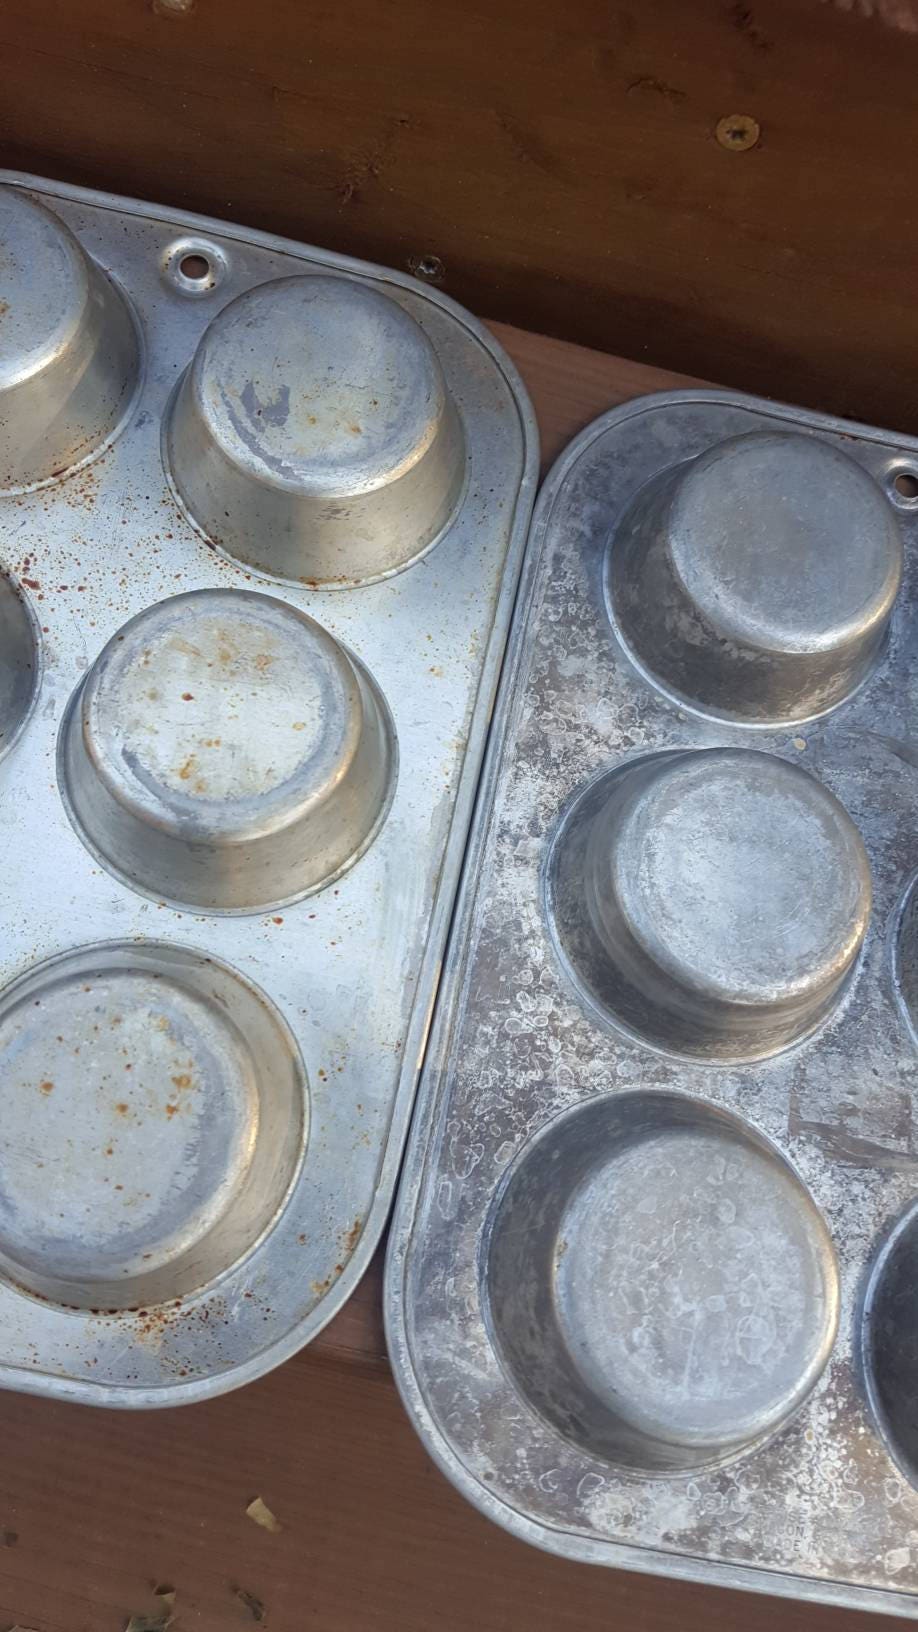 Vintage Aluminum Muffin Pans / Enterprise Aluminum / Set of 2